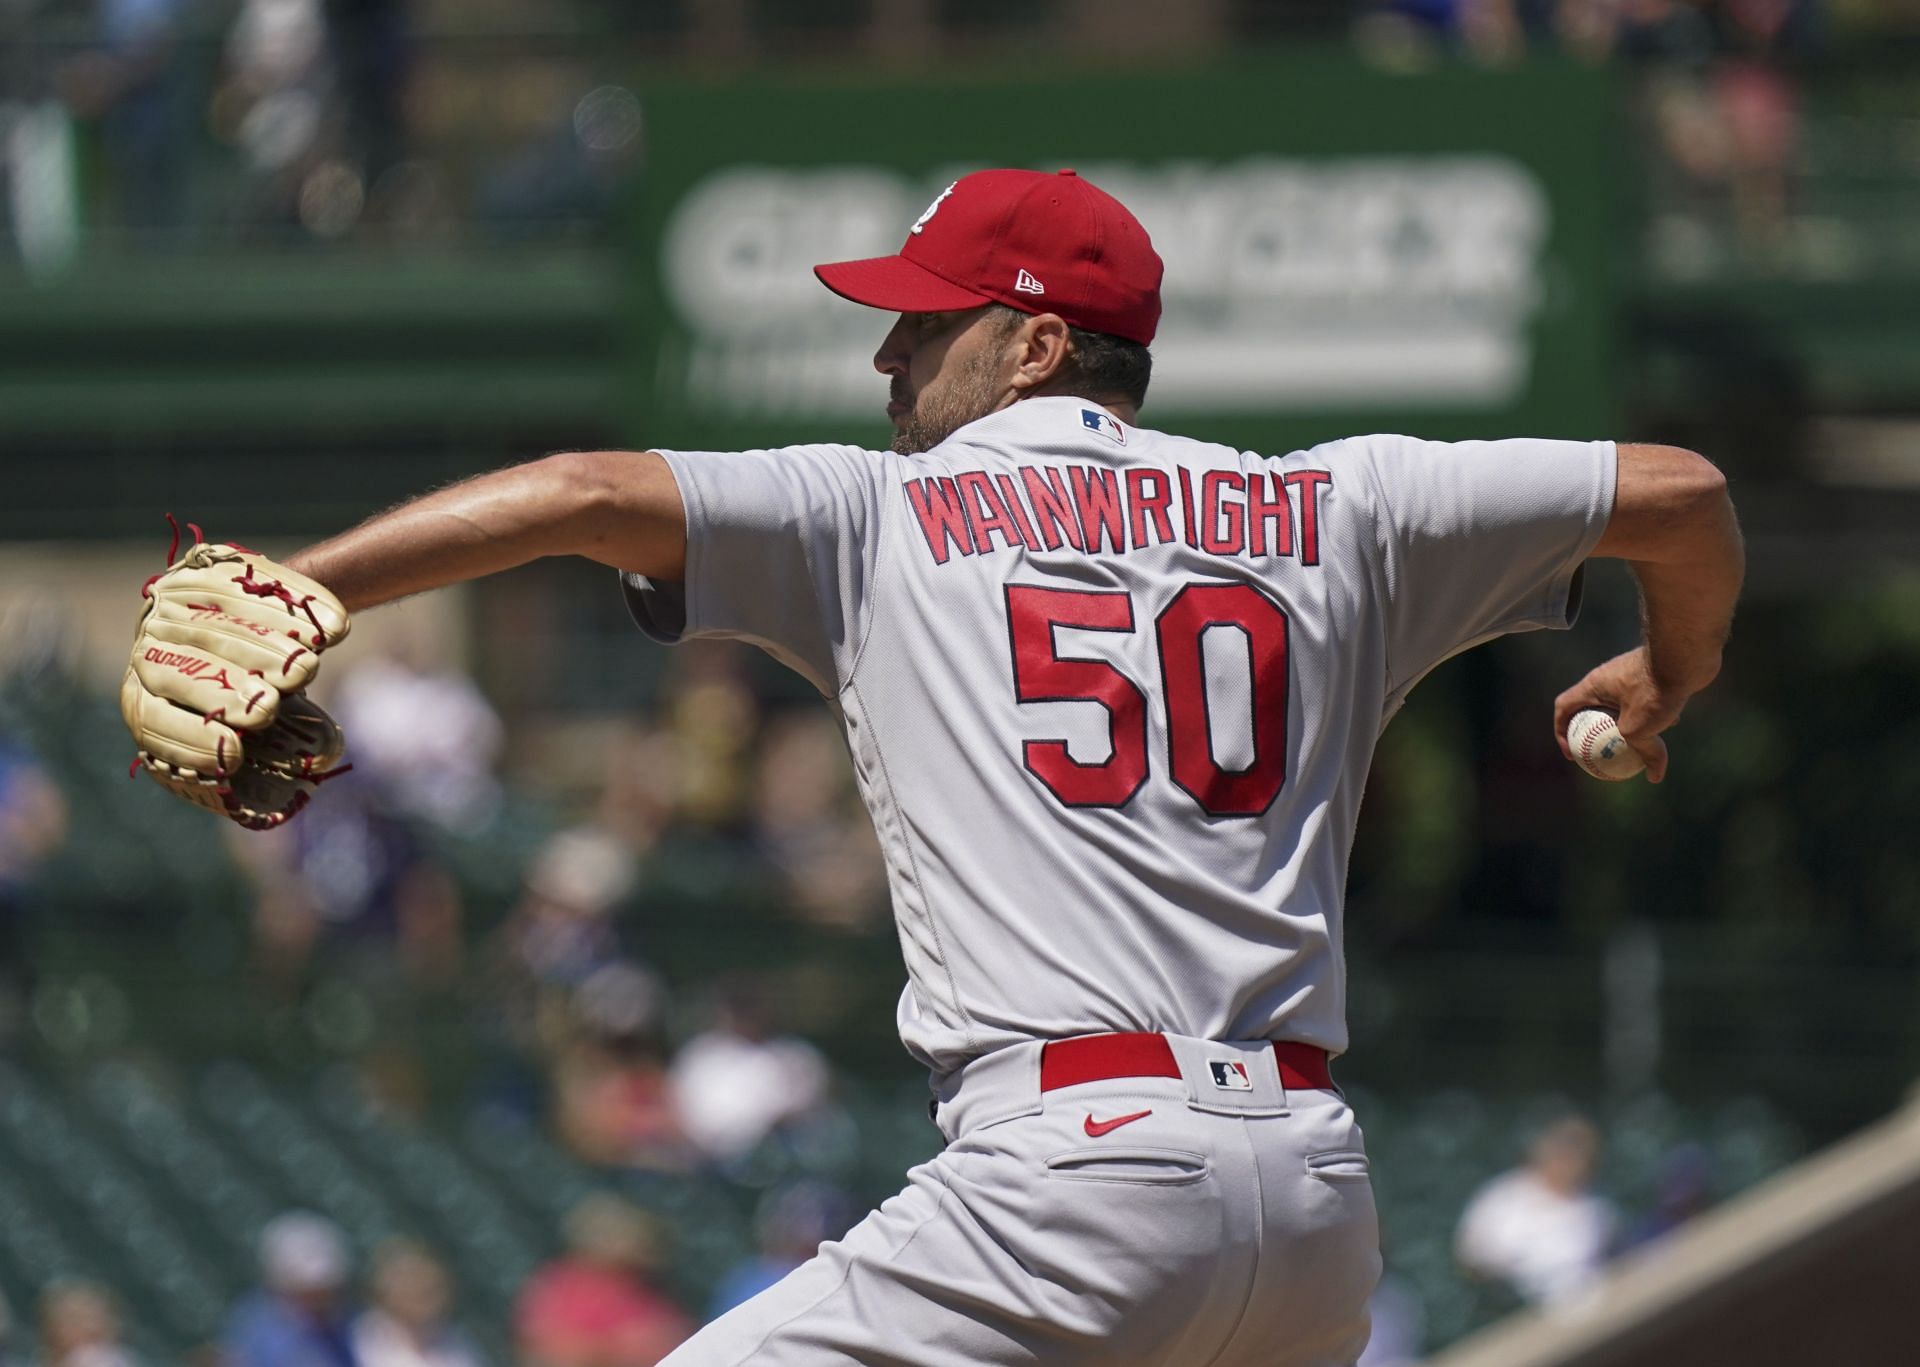 Adam Wainwright - World Baseball Classic News, Rumors, & Updates